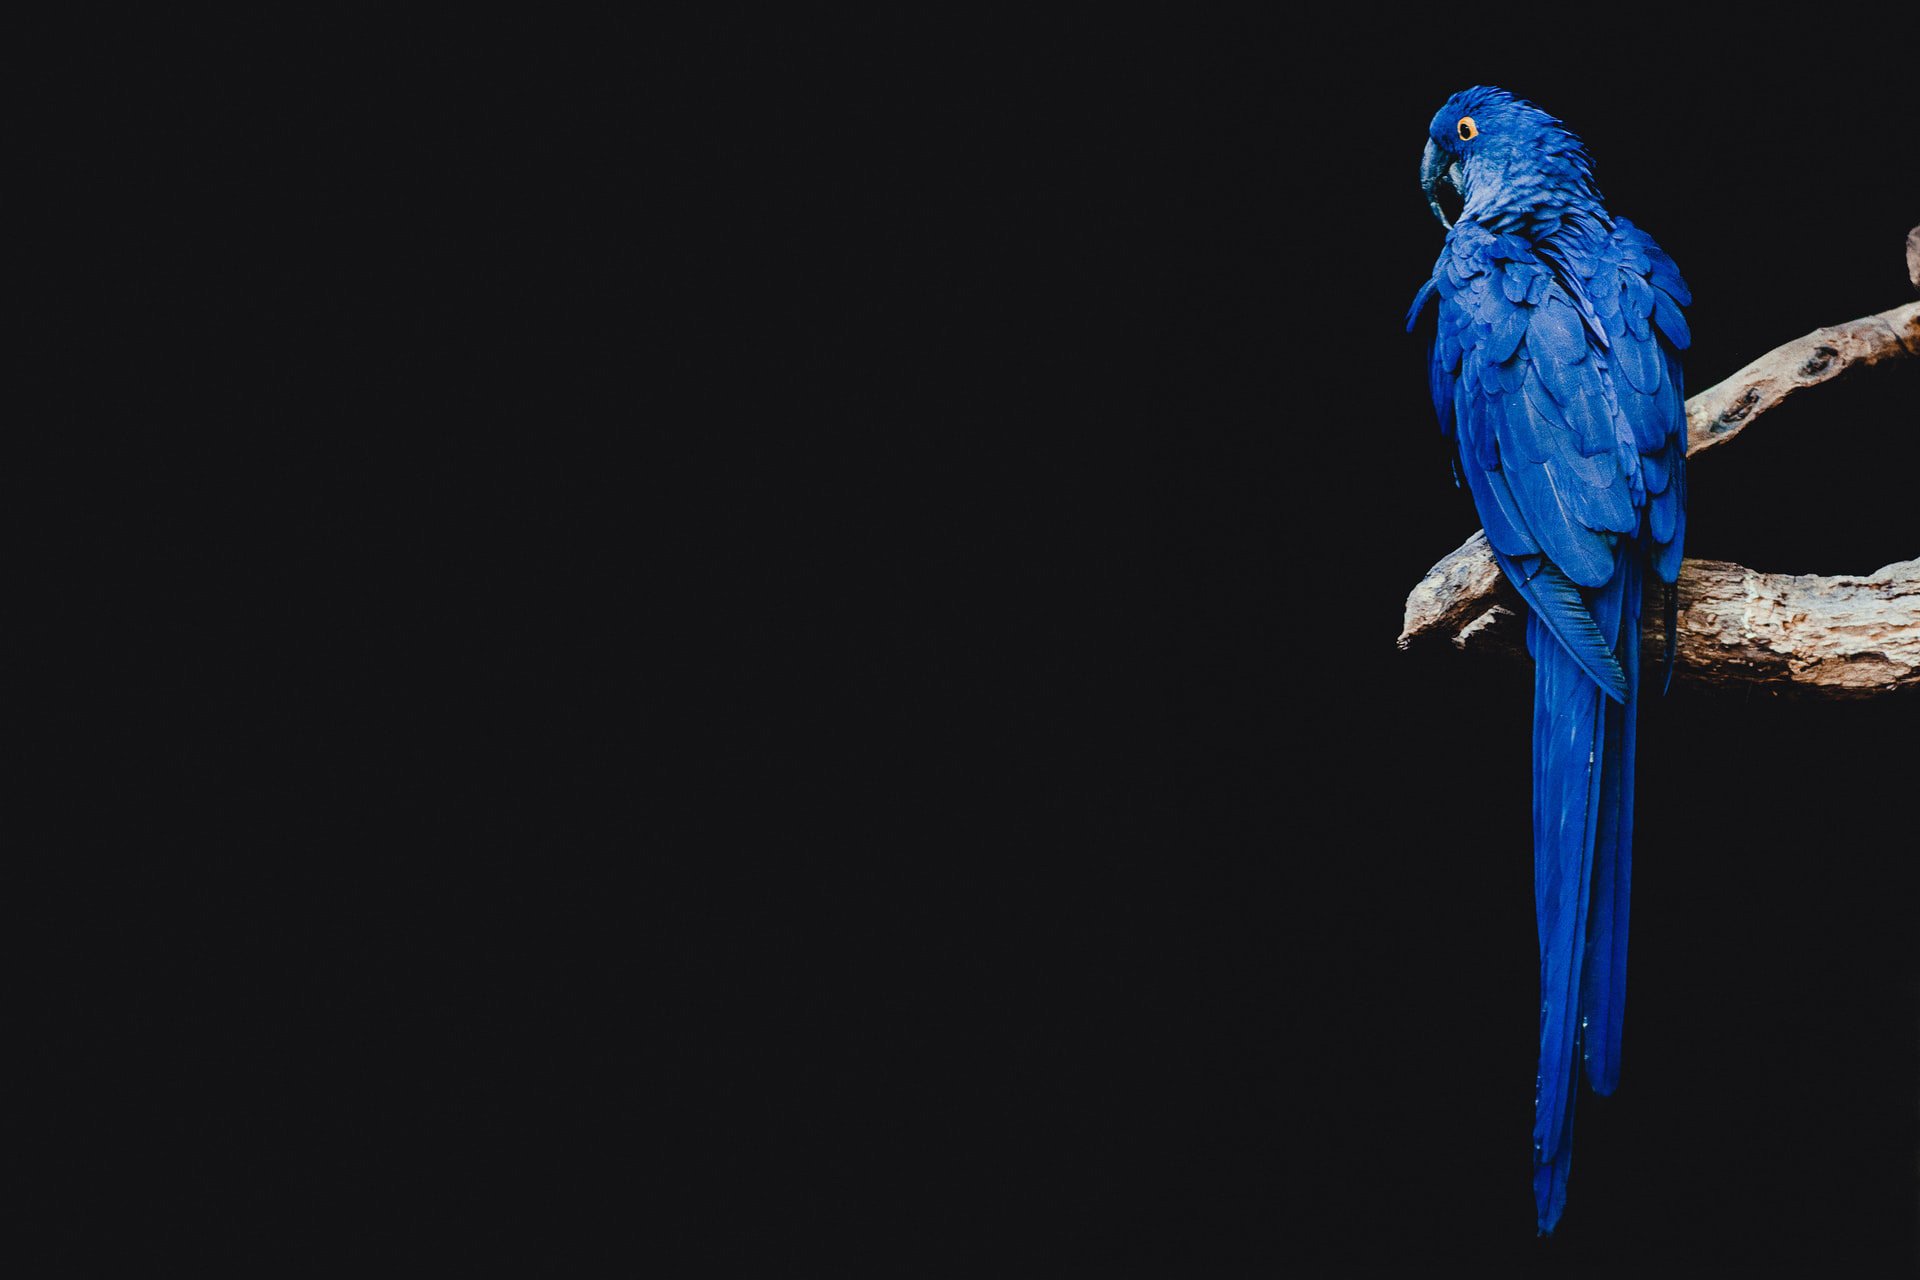 Témoignage - I AM DIGITAL - fond avec perroquet bleu